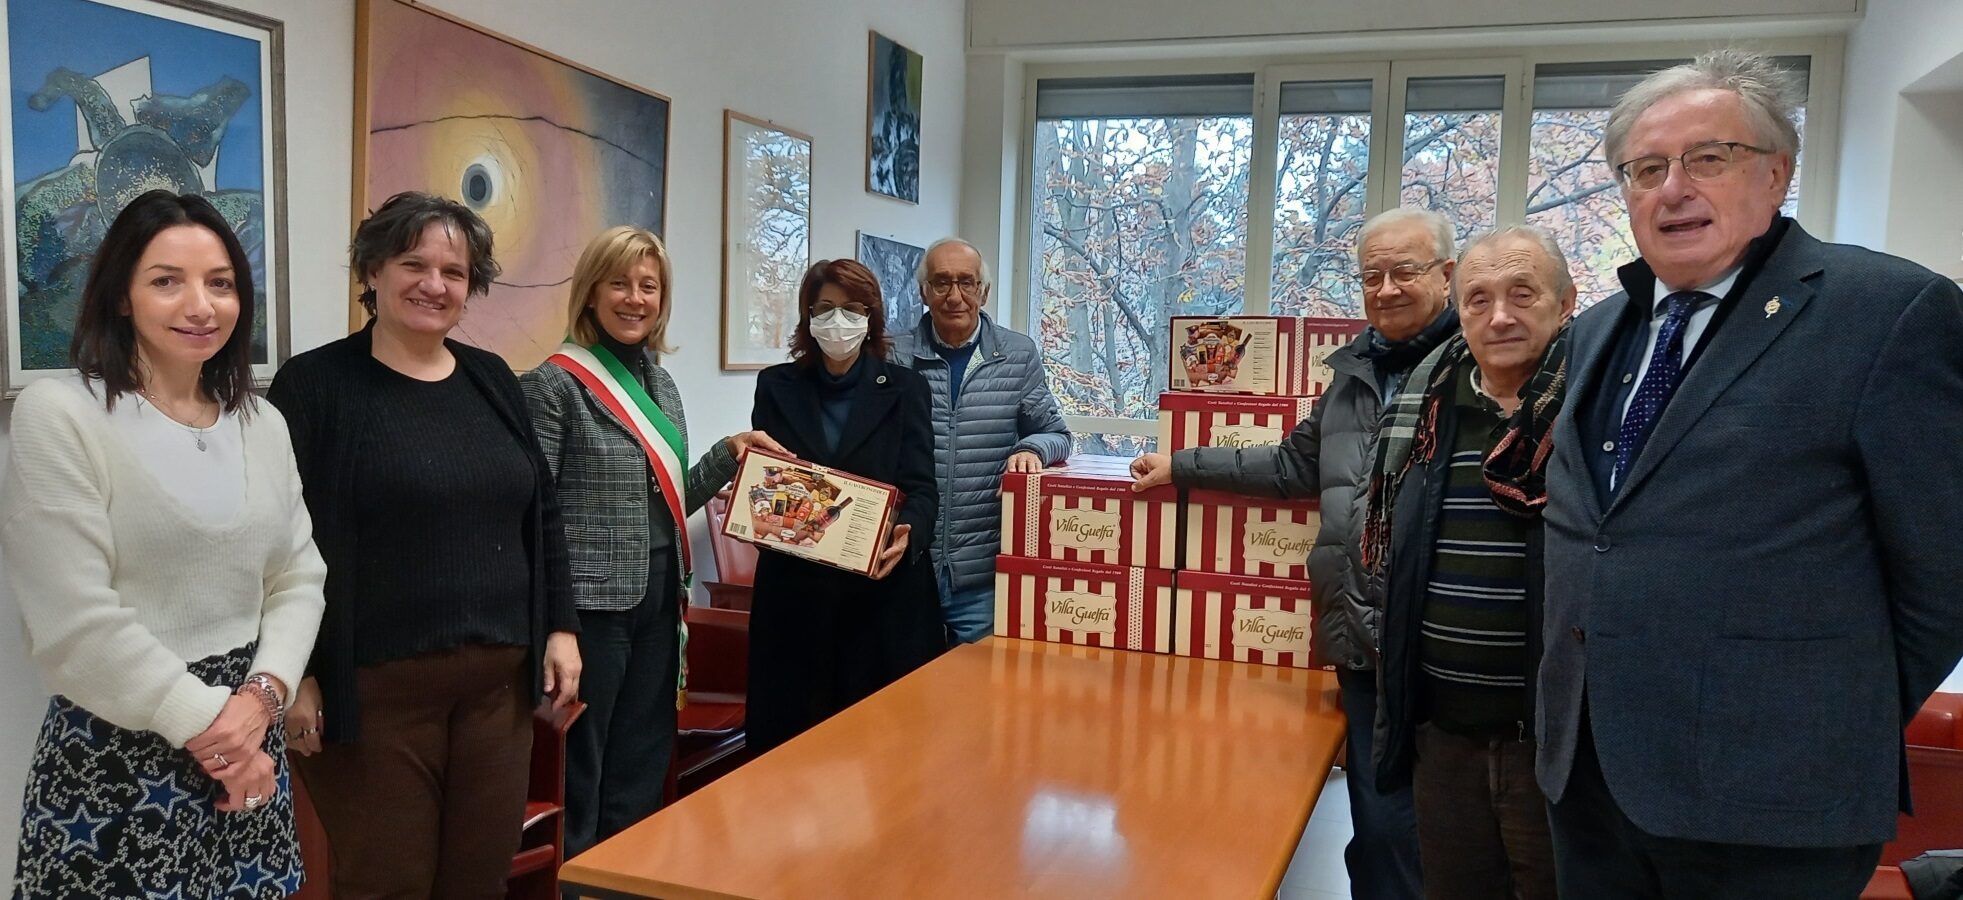 Cerimonia di consegna dei pacchi natalizi da parte dei membri del Lions Club Castellanza-Malpensa al sindaco Mirella Cerini e all'assessore Crisrtina Borroni